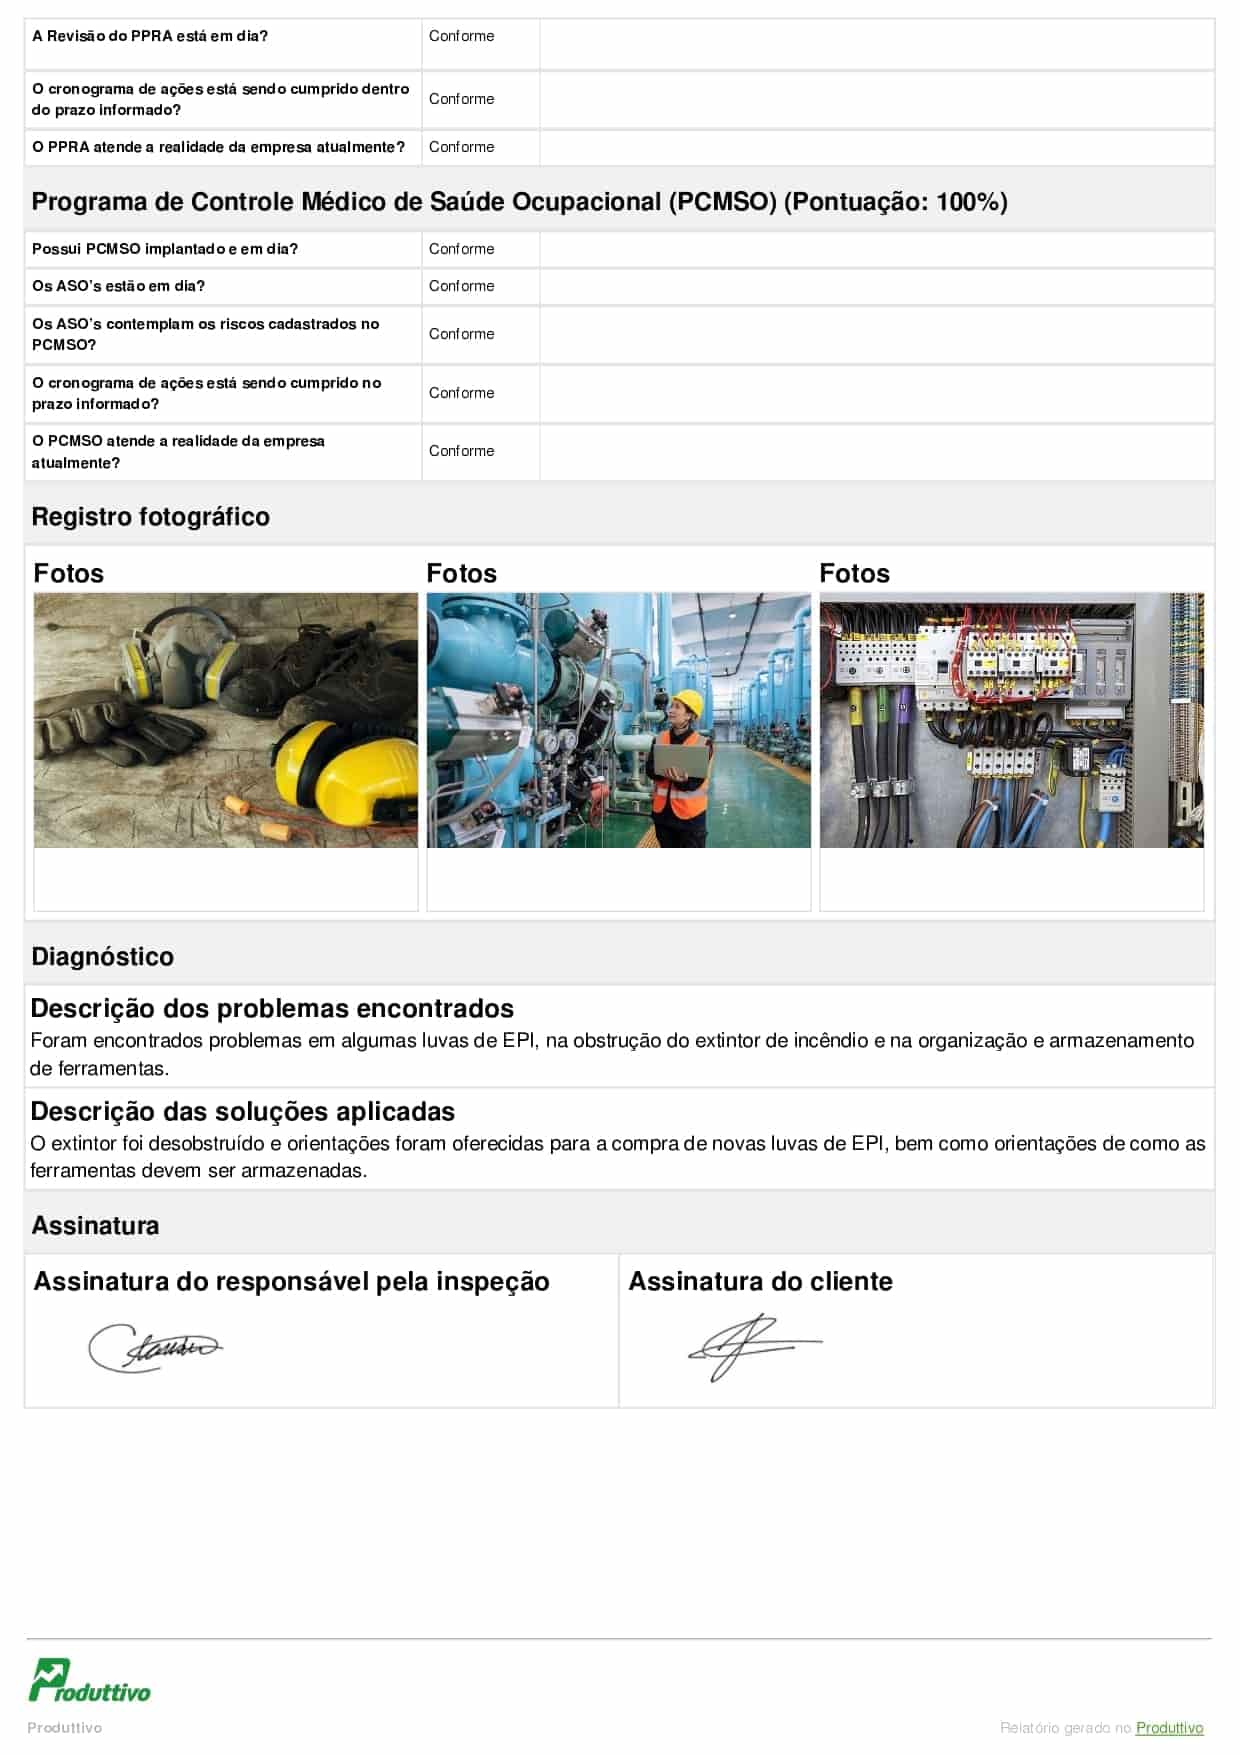 Exemplo de modelo de ordem de serviço digital de segurança do trabalho para usar no app do Produttivo com questões de checklist e registros fotográficos, página 04